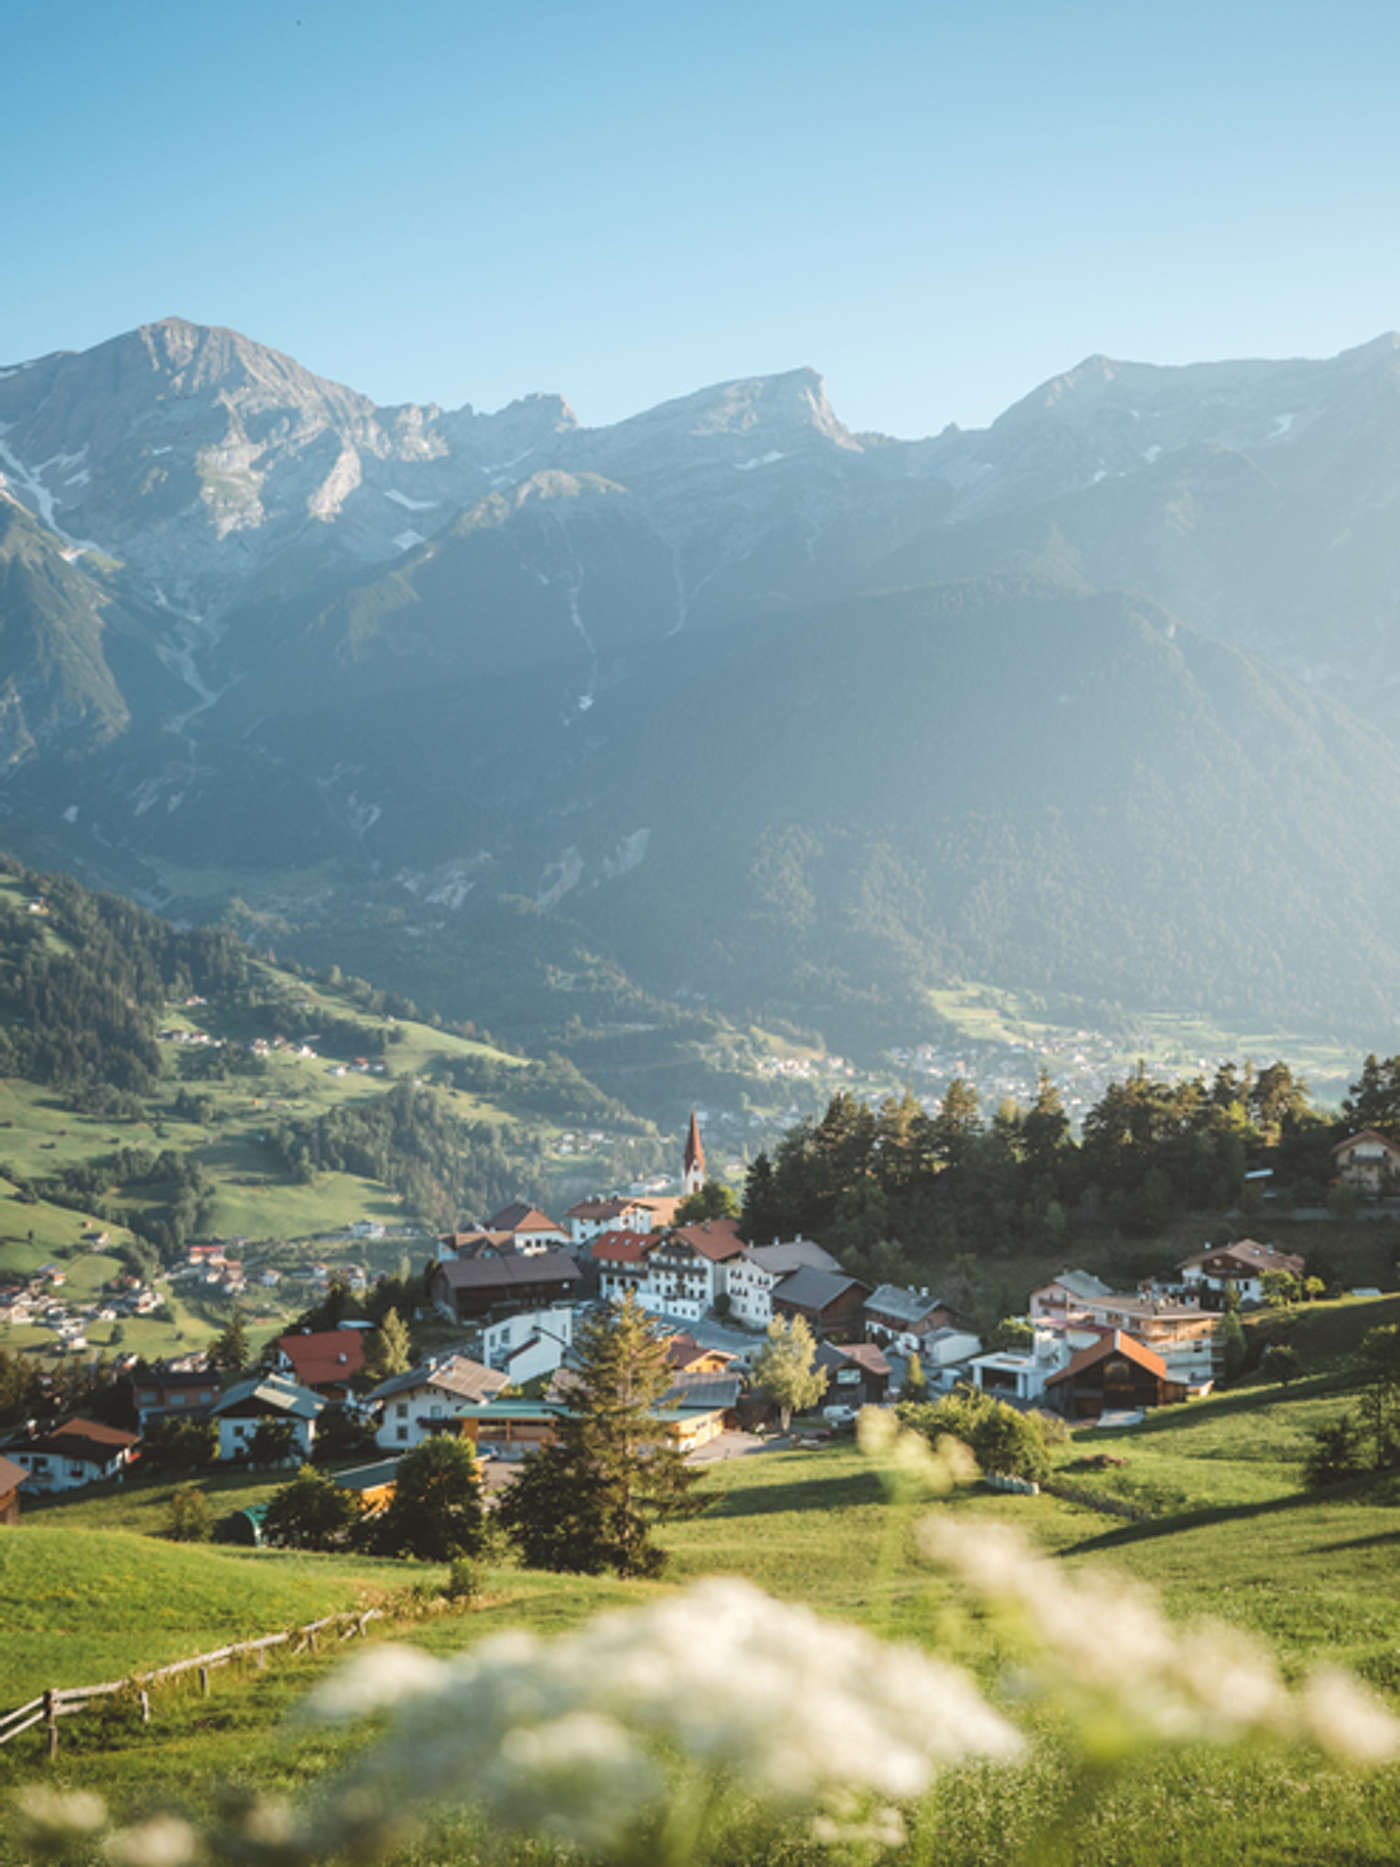 Oppdage
ditt stykke
Tyrol.